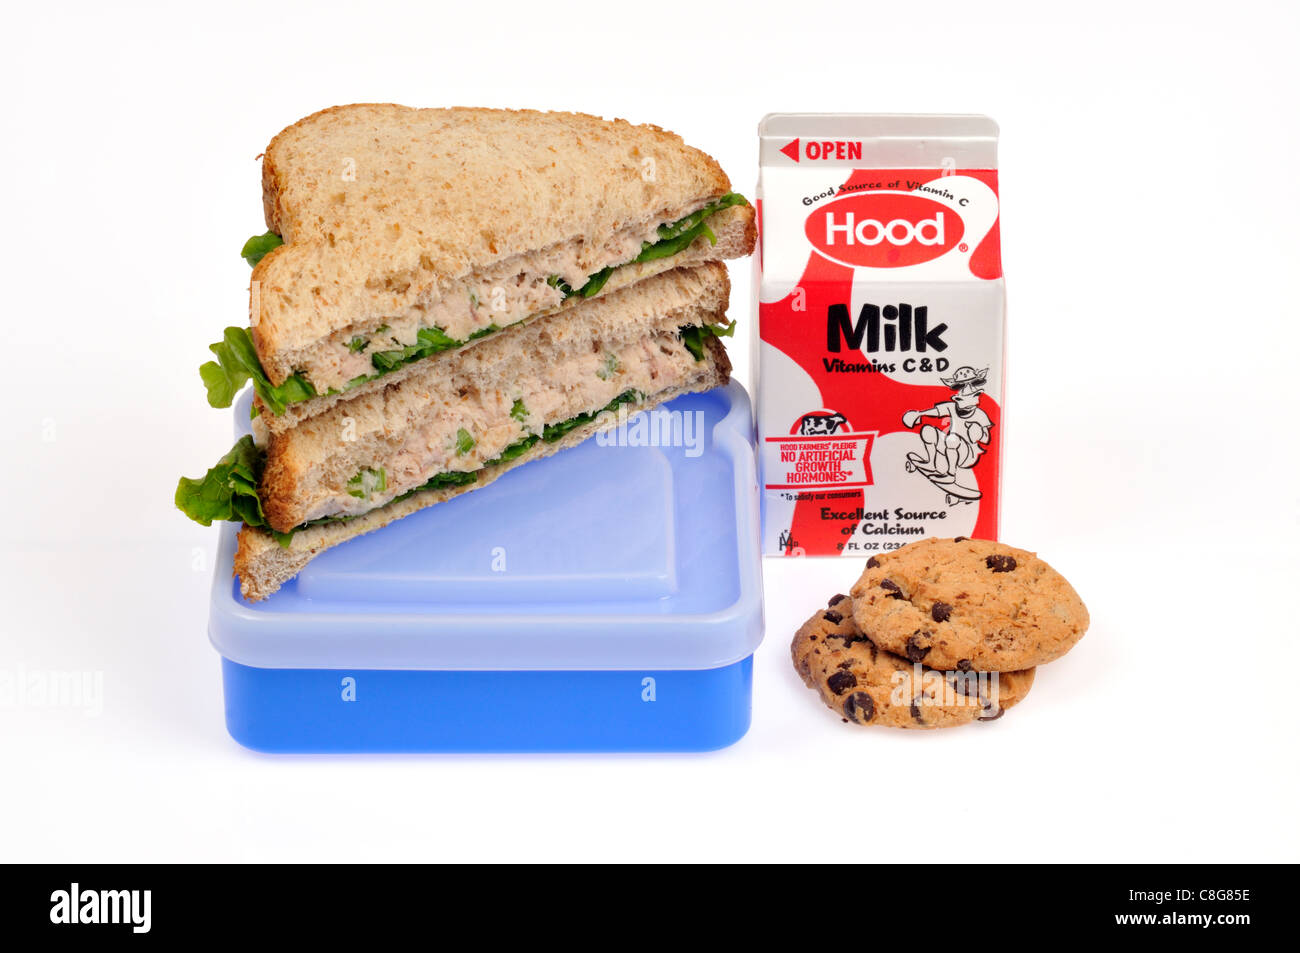 Mayo thon avec laitue sandwich sur pain complet coupé en deux sur lunch box avec réservoir de lait et des cookies sur fond blanc, découpe. Banque D'Images